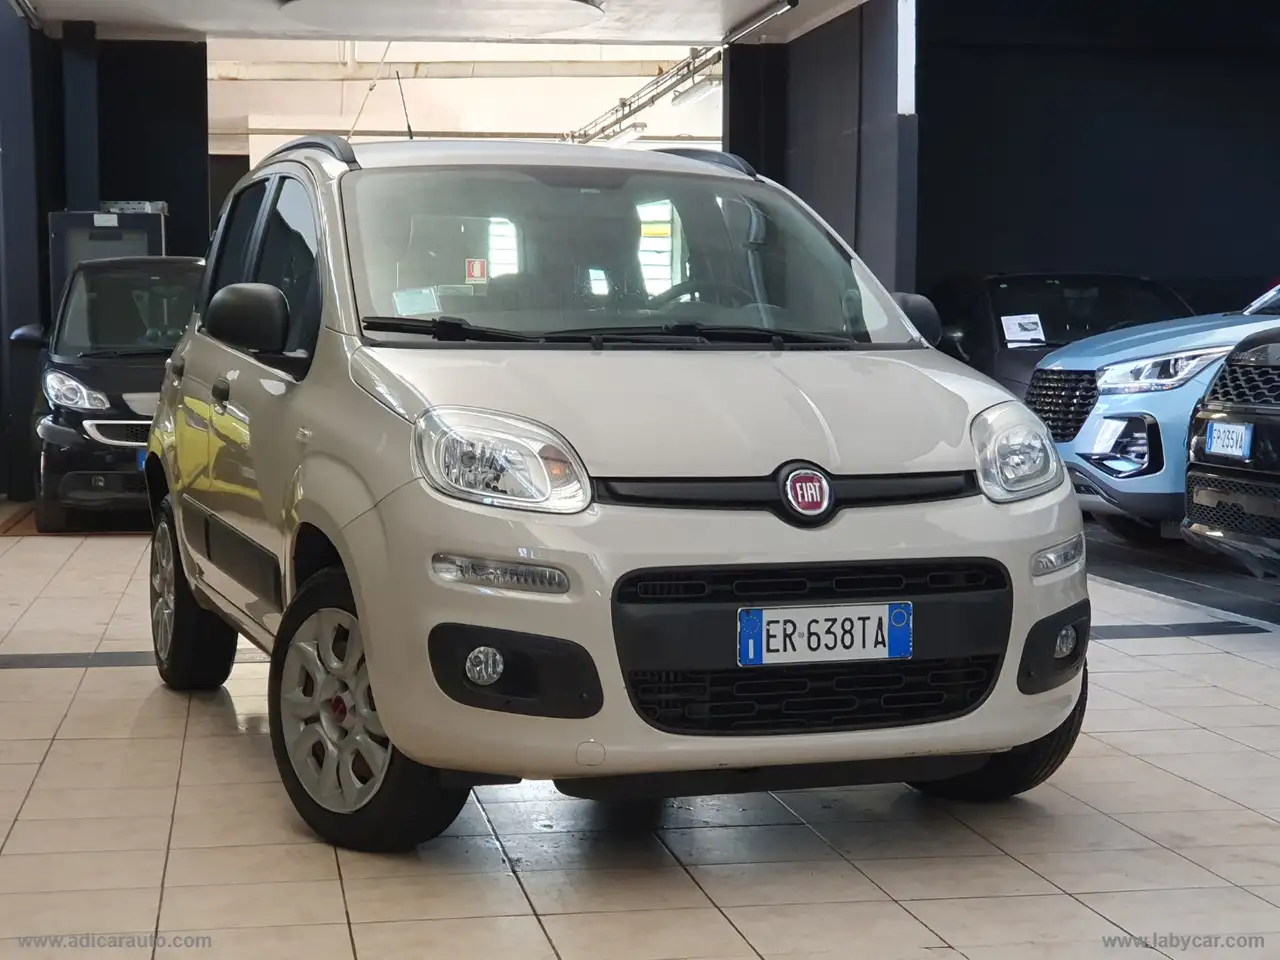 Fiat Panda Berline in Beige tweedehands in Torino - To voor € 5.990,-